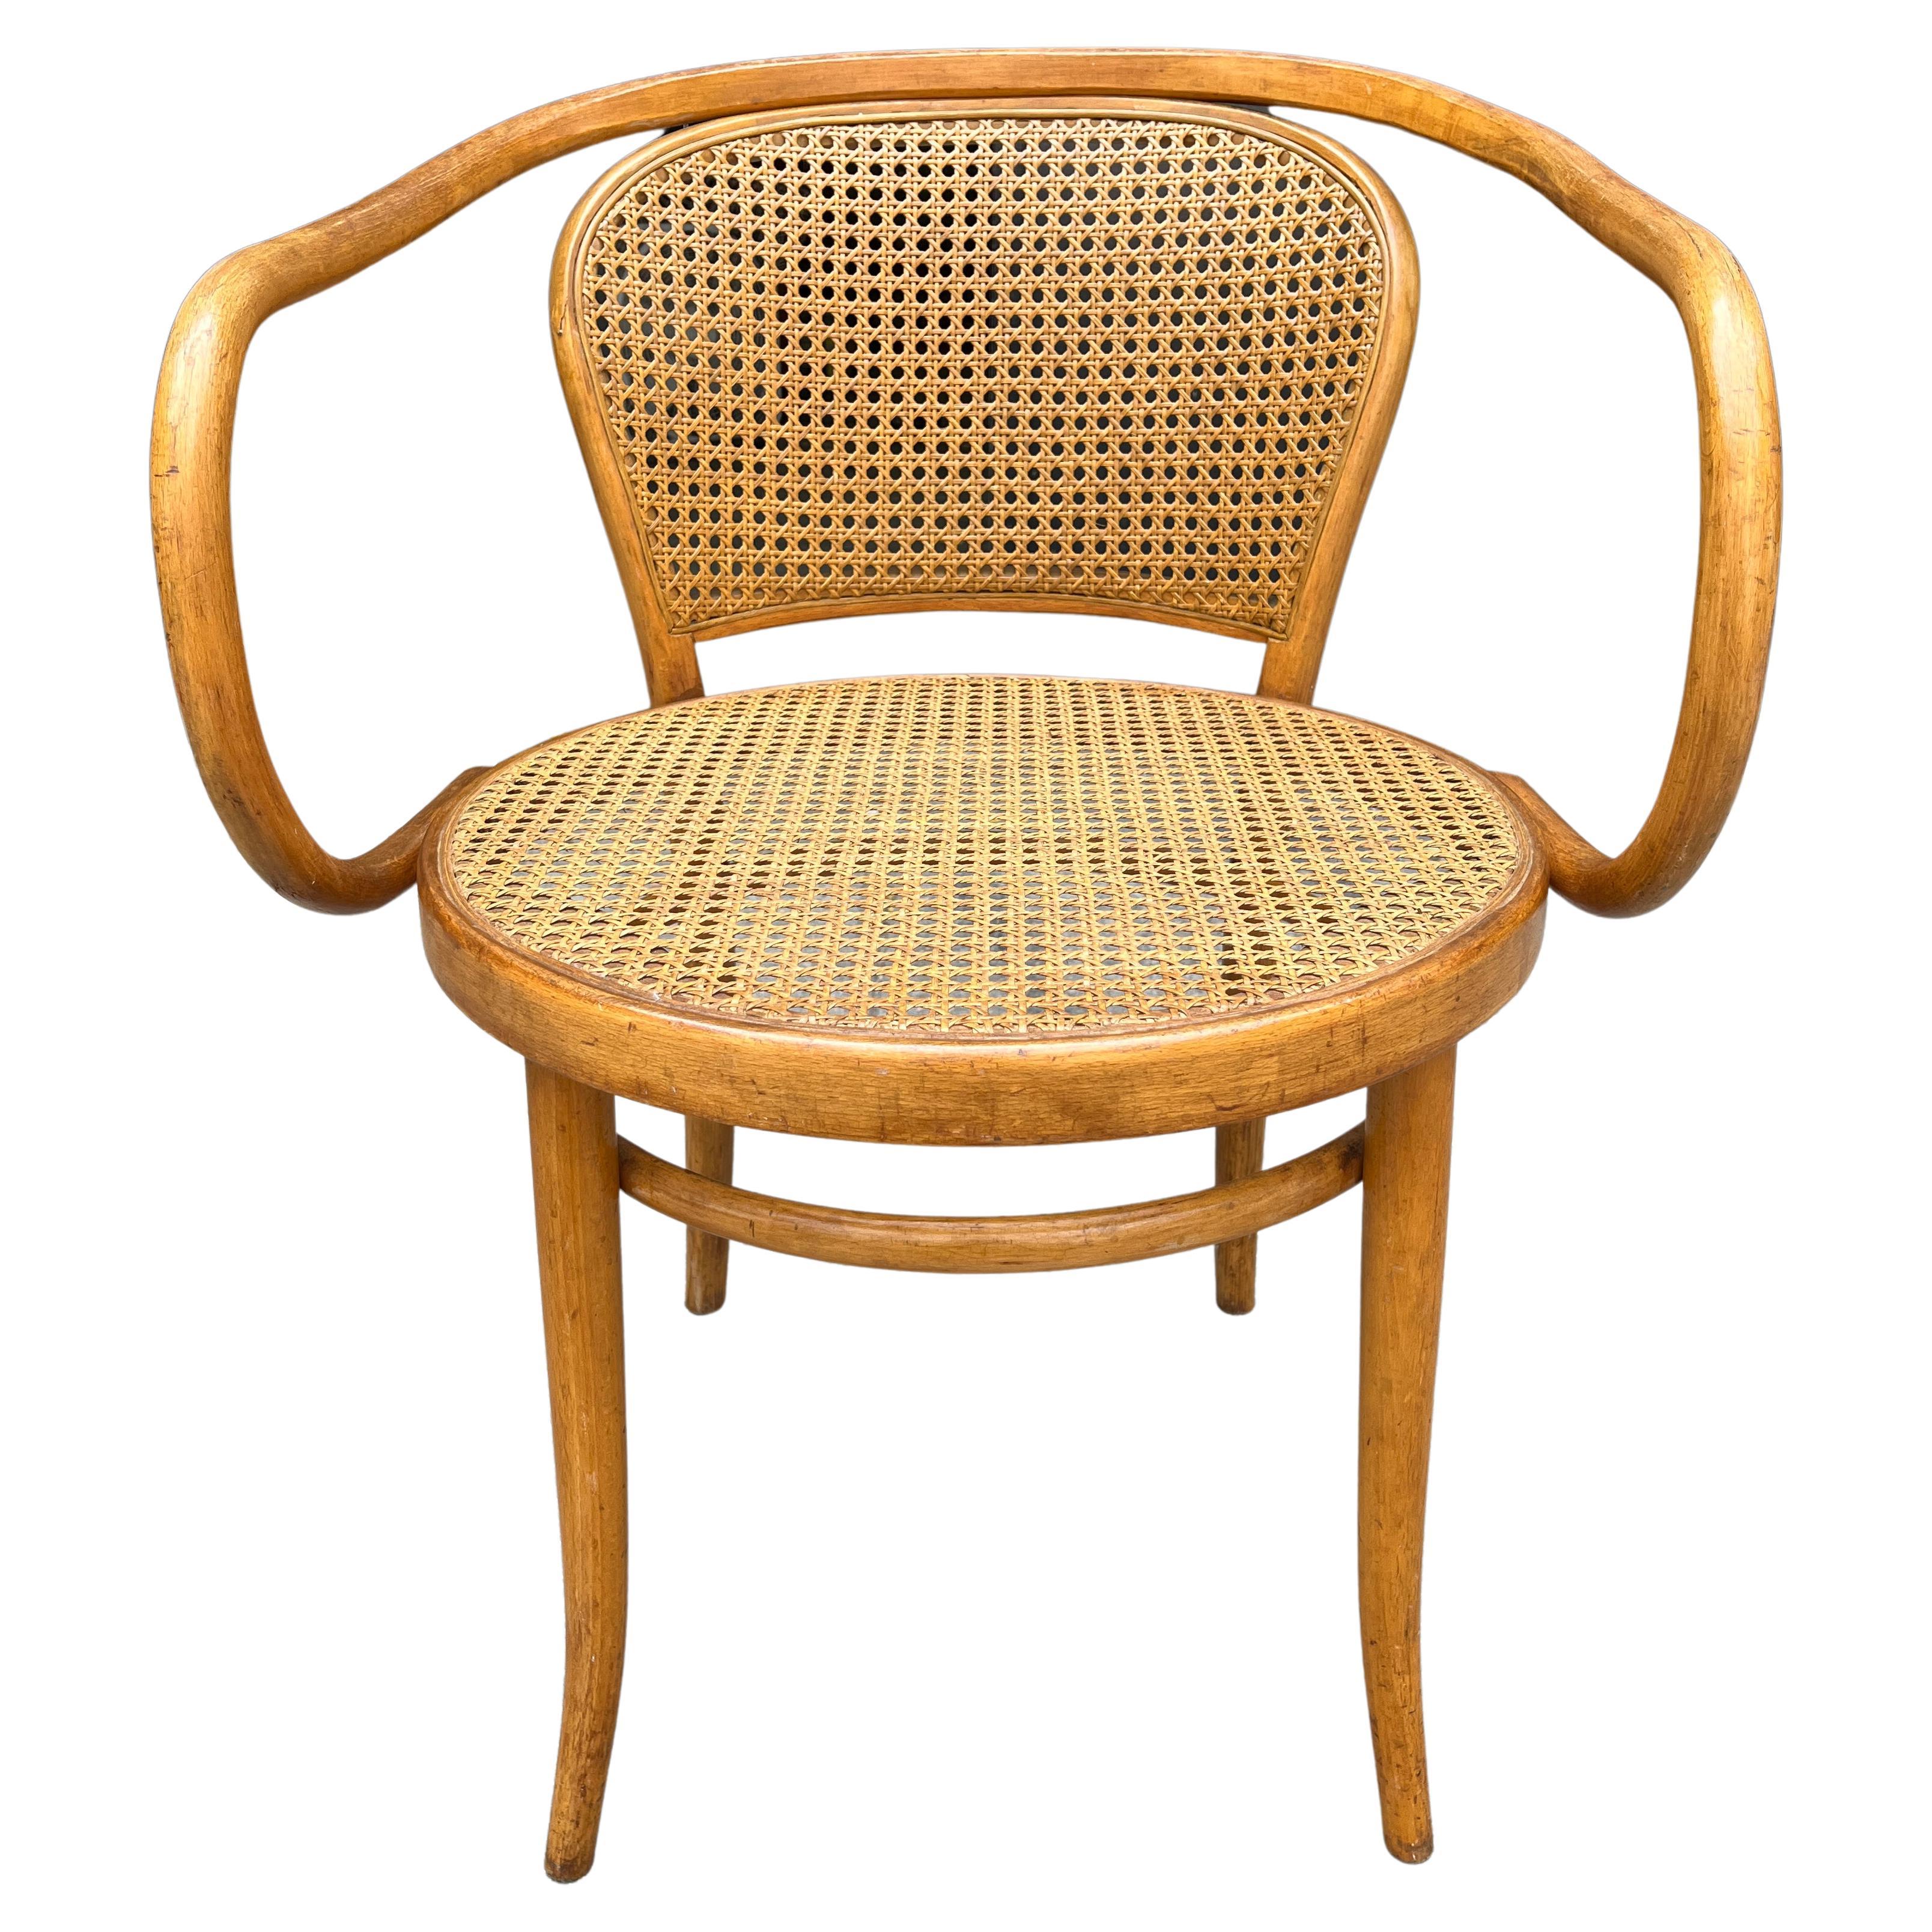 Chaise n° 210 conçue par Gebrüder Thonet en 1900, (ainsi que n° 209) du célèbre designer Le Corbusier. 
Cette chaise est fabriquée en Tchécoslovaquie.  (usine de Thonet avant la Seconde Guerre mondiale).

Nouvelle canne de couleur assortie 
hauteur